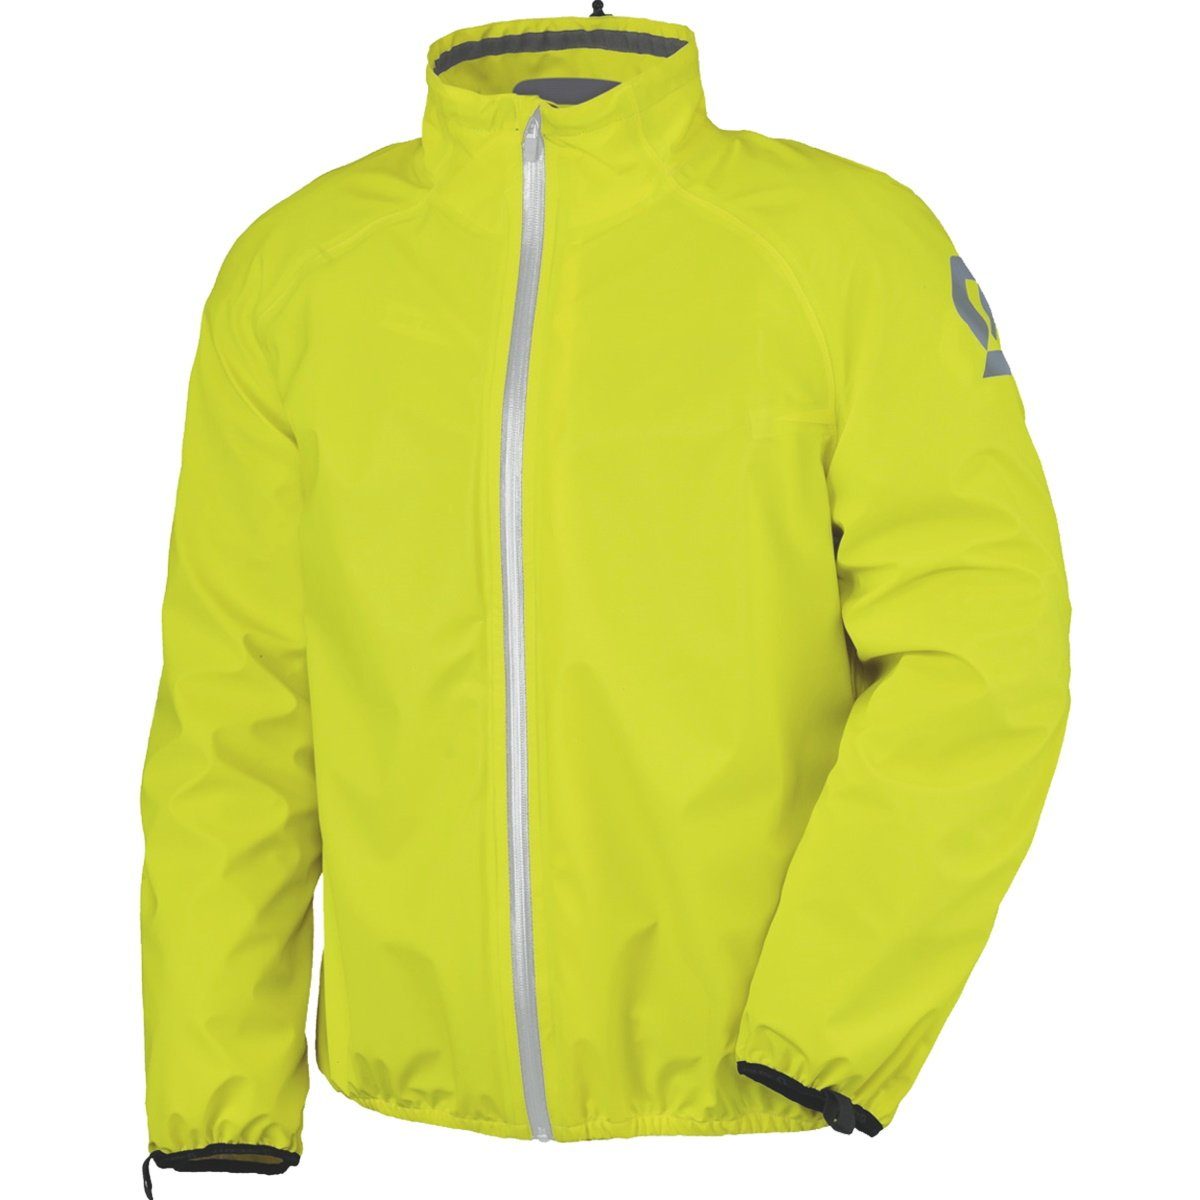 Scott Motorradhose Scott Ergonomic Pro DP D-Size Regenjacke gelb Kurzgröße neon-gelb